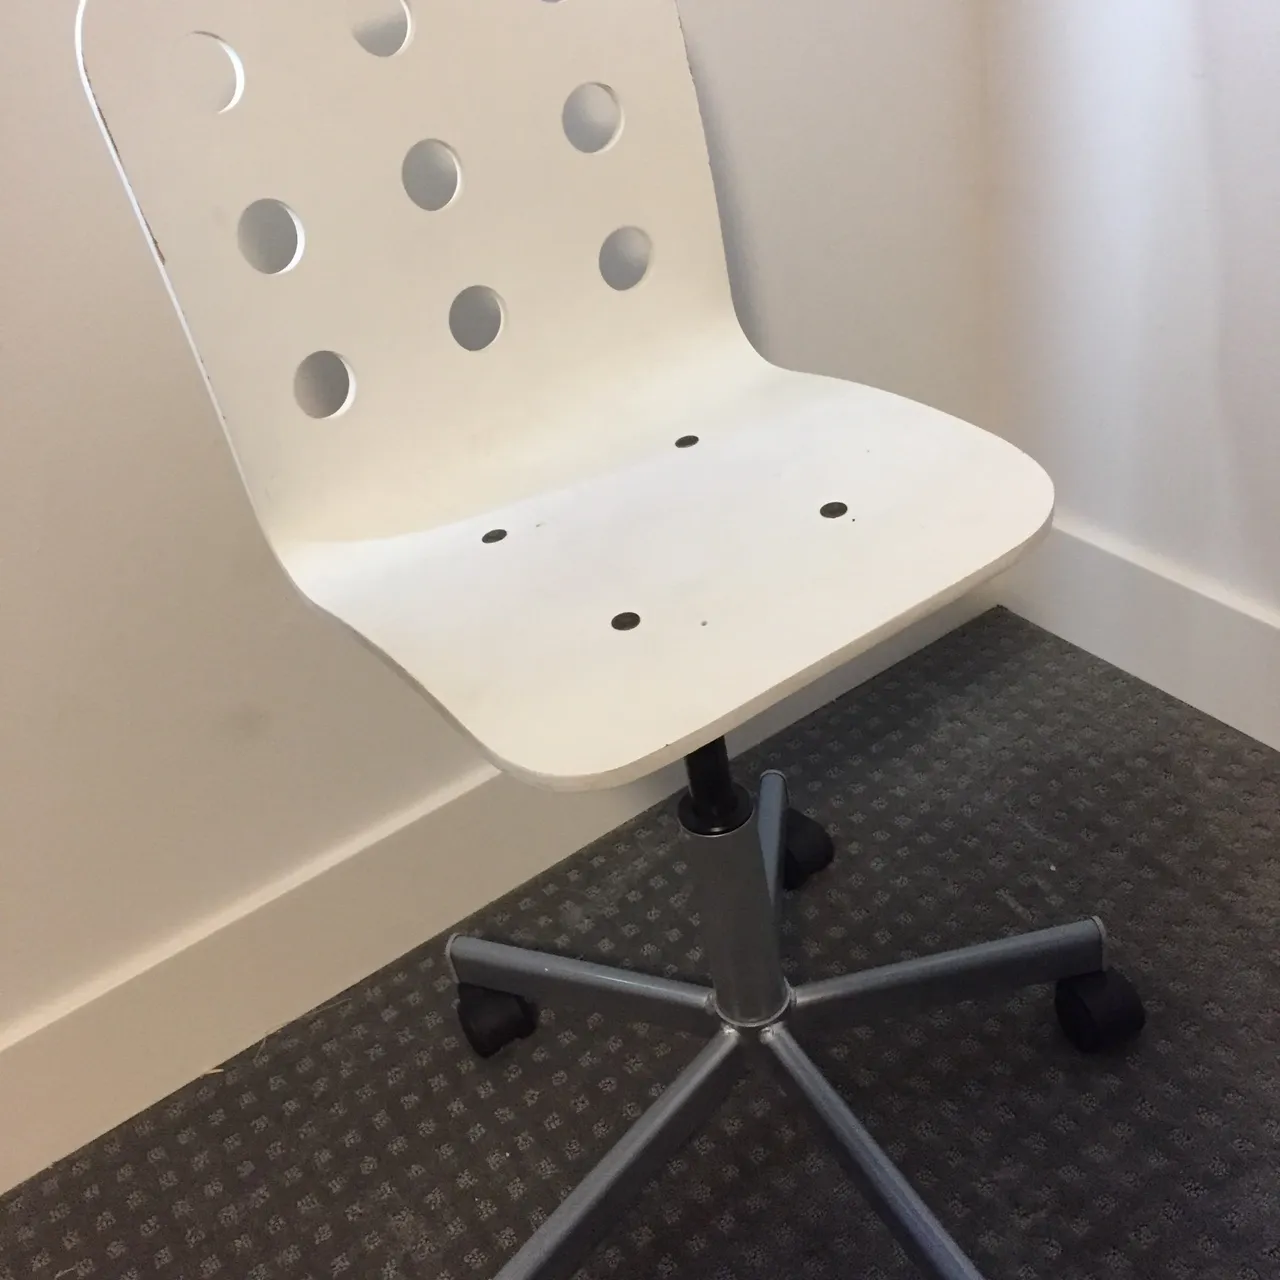 IKEA kid’s office chair photo 1